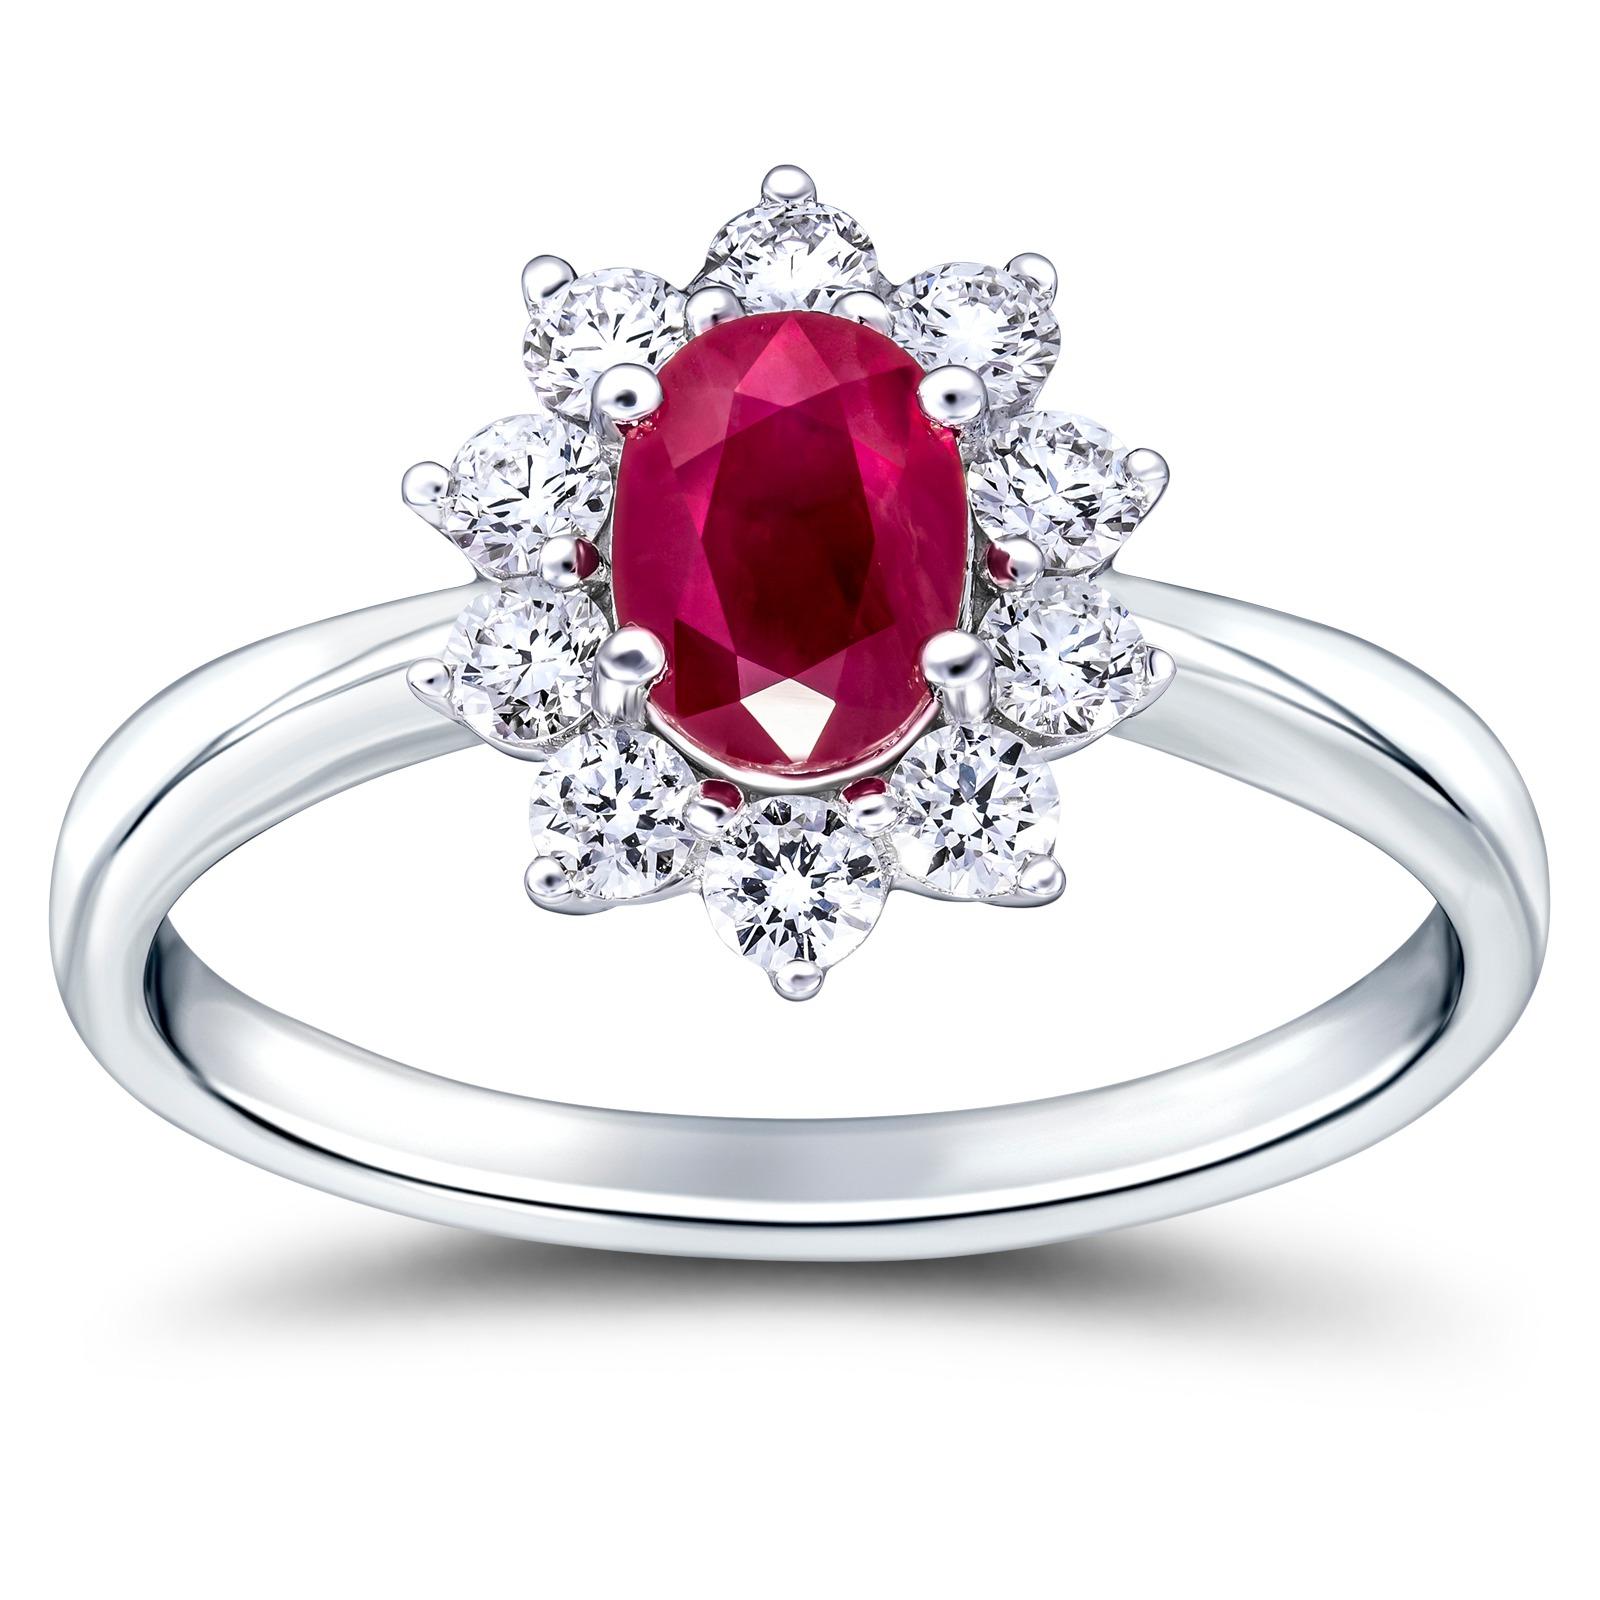 Elegant und auffallend 0,80 Karat insgesamt Diamant und Rubin Cluster Ring, der strahlende ovale Rubin ist umgeben von 10 weißen atemberaubenden weißen Diamanten mit einem Gesamtgewicht von 0,30 Karat Farbe G/H Klarheit SI, der Rubin ist 0,50 Karat